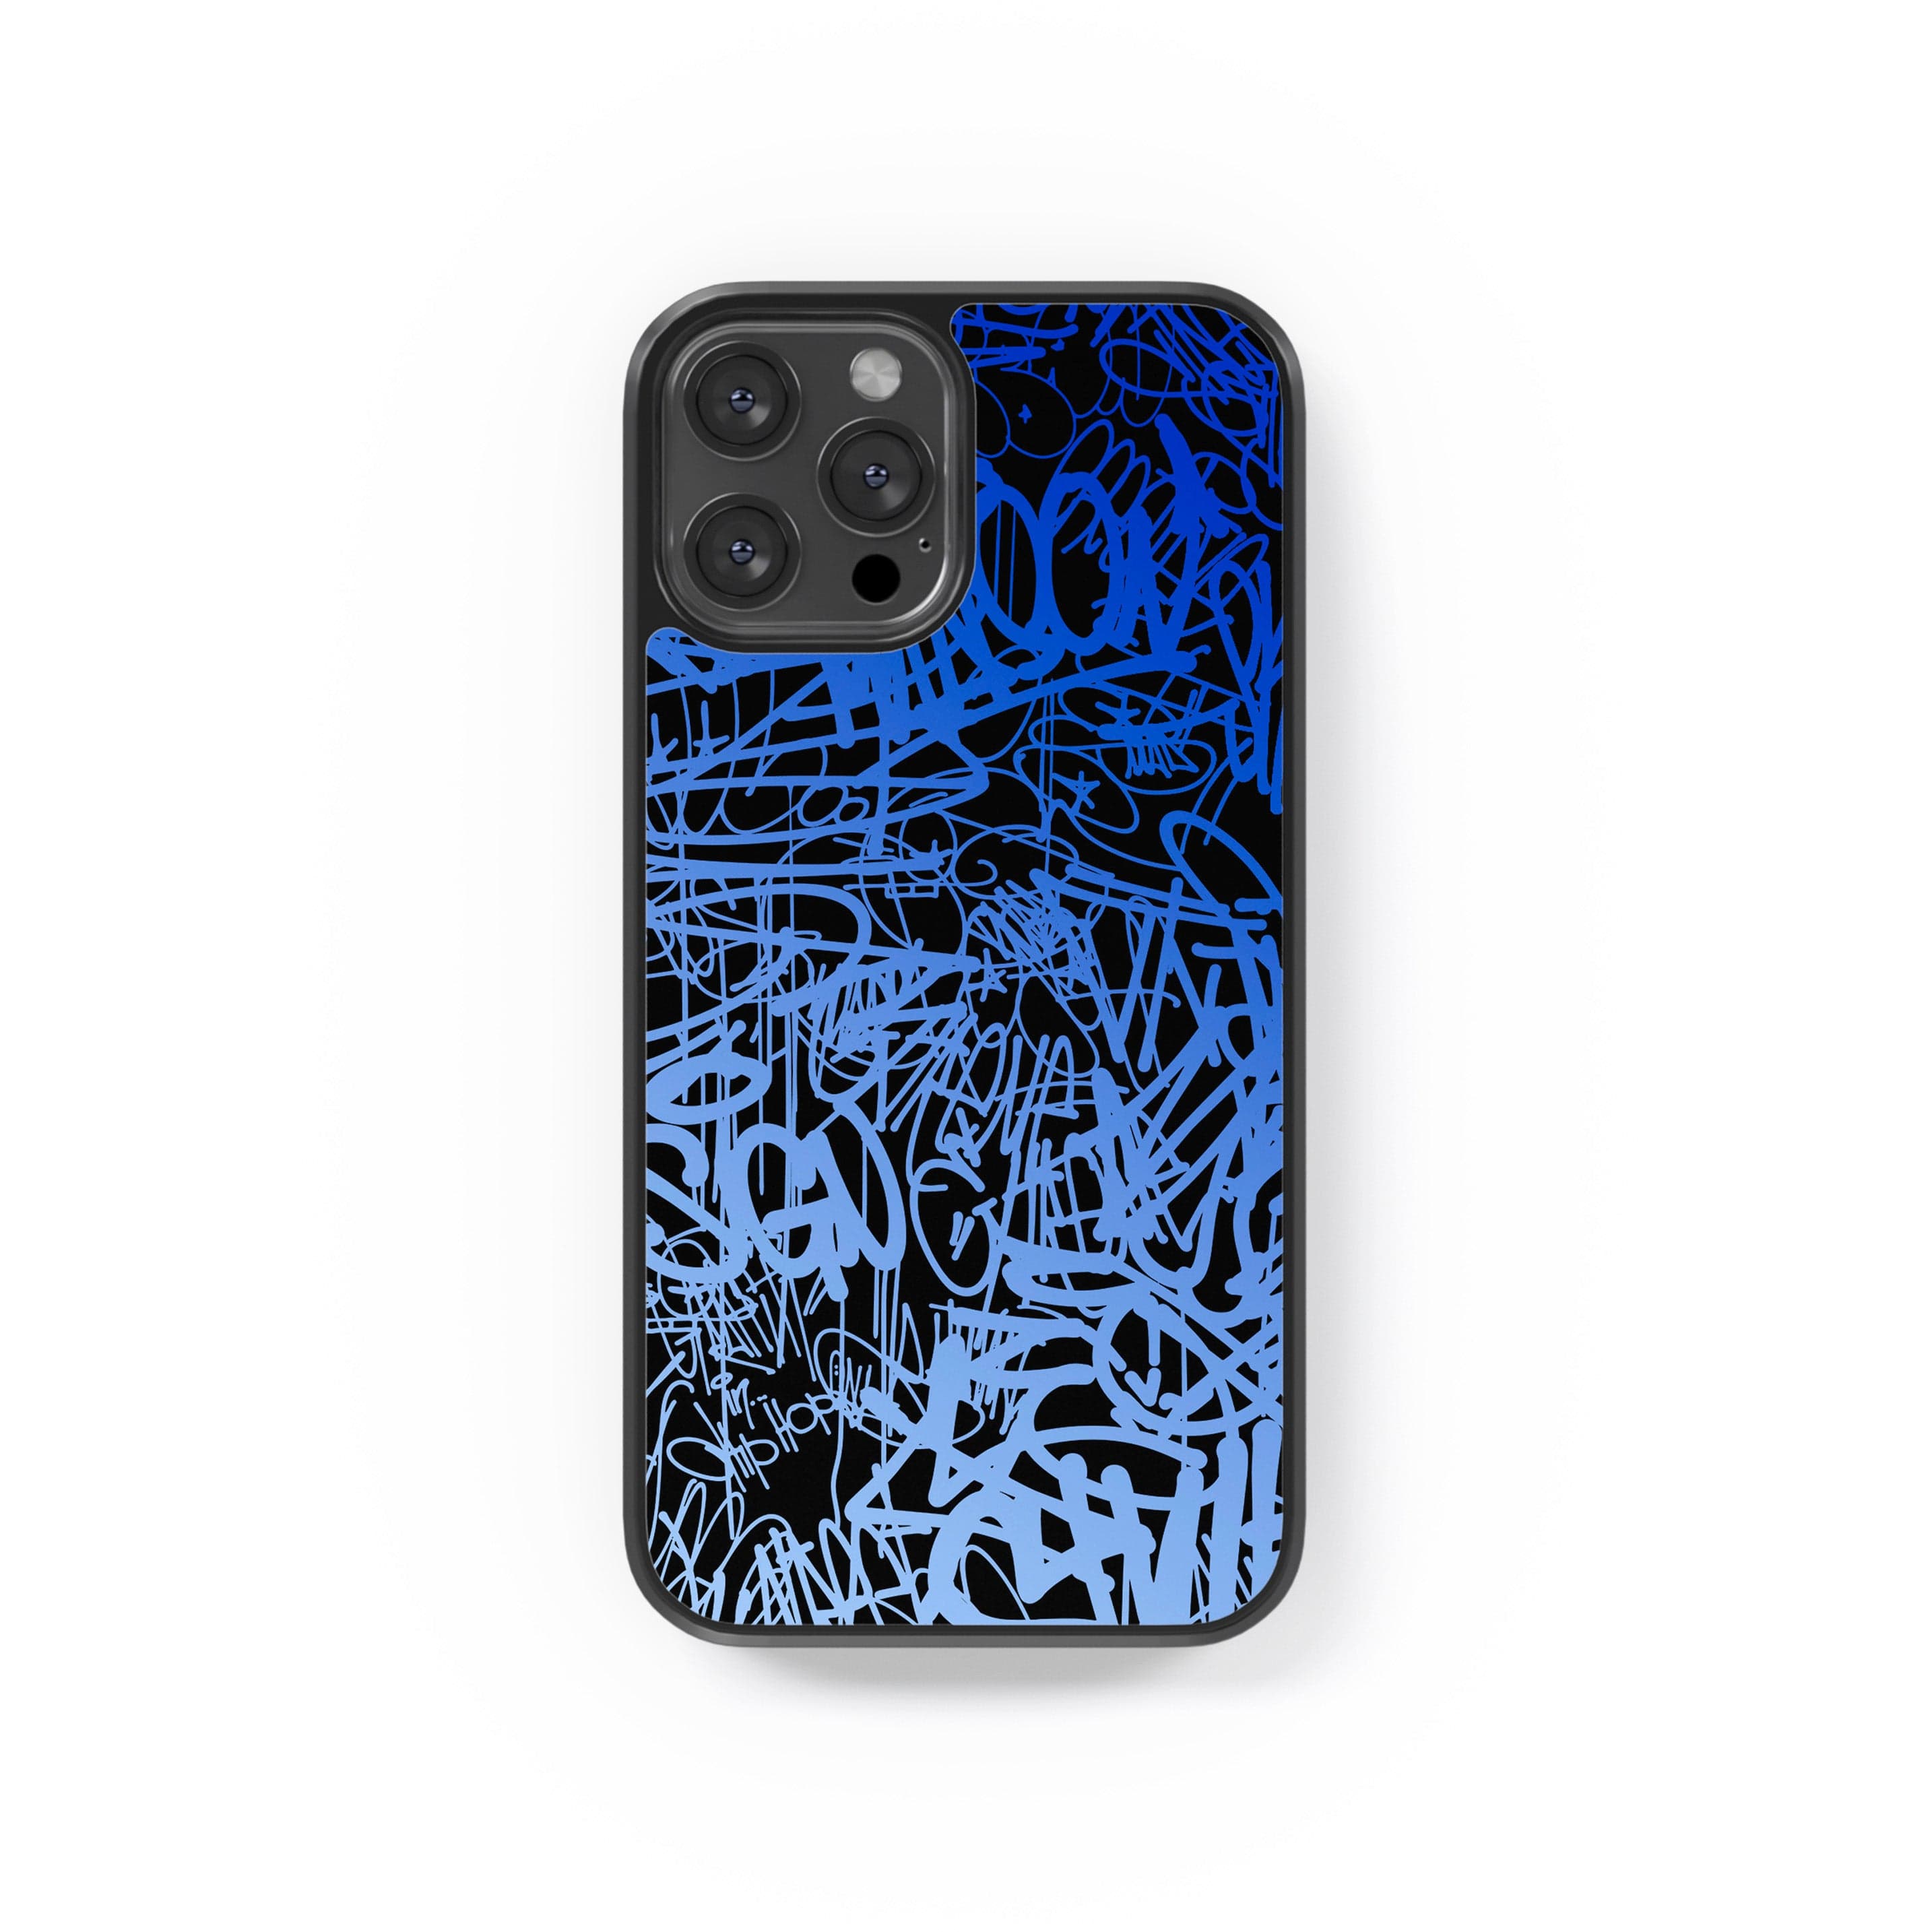 Phone case "Blue graffiti 1"